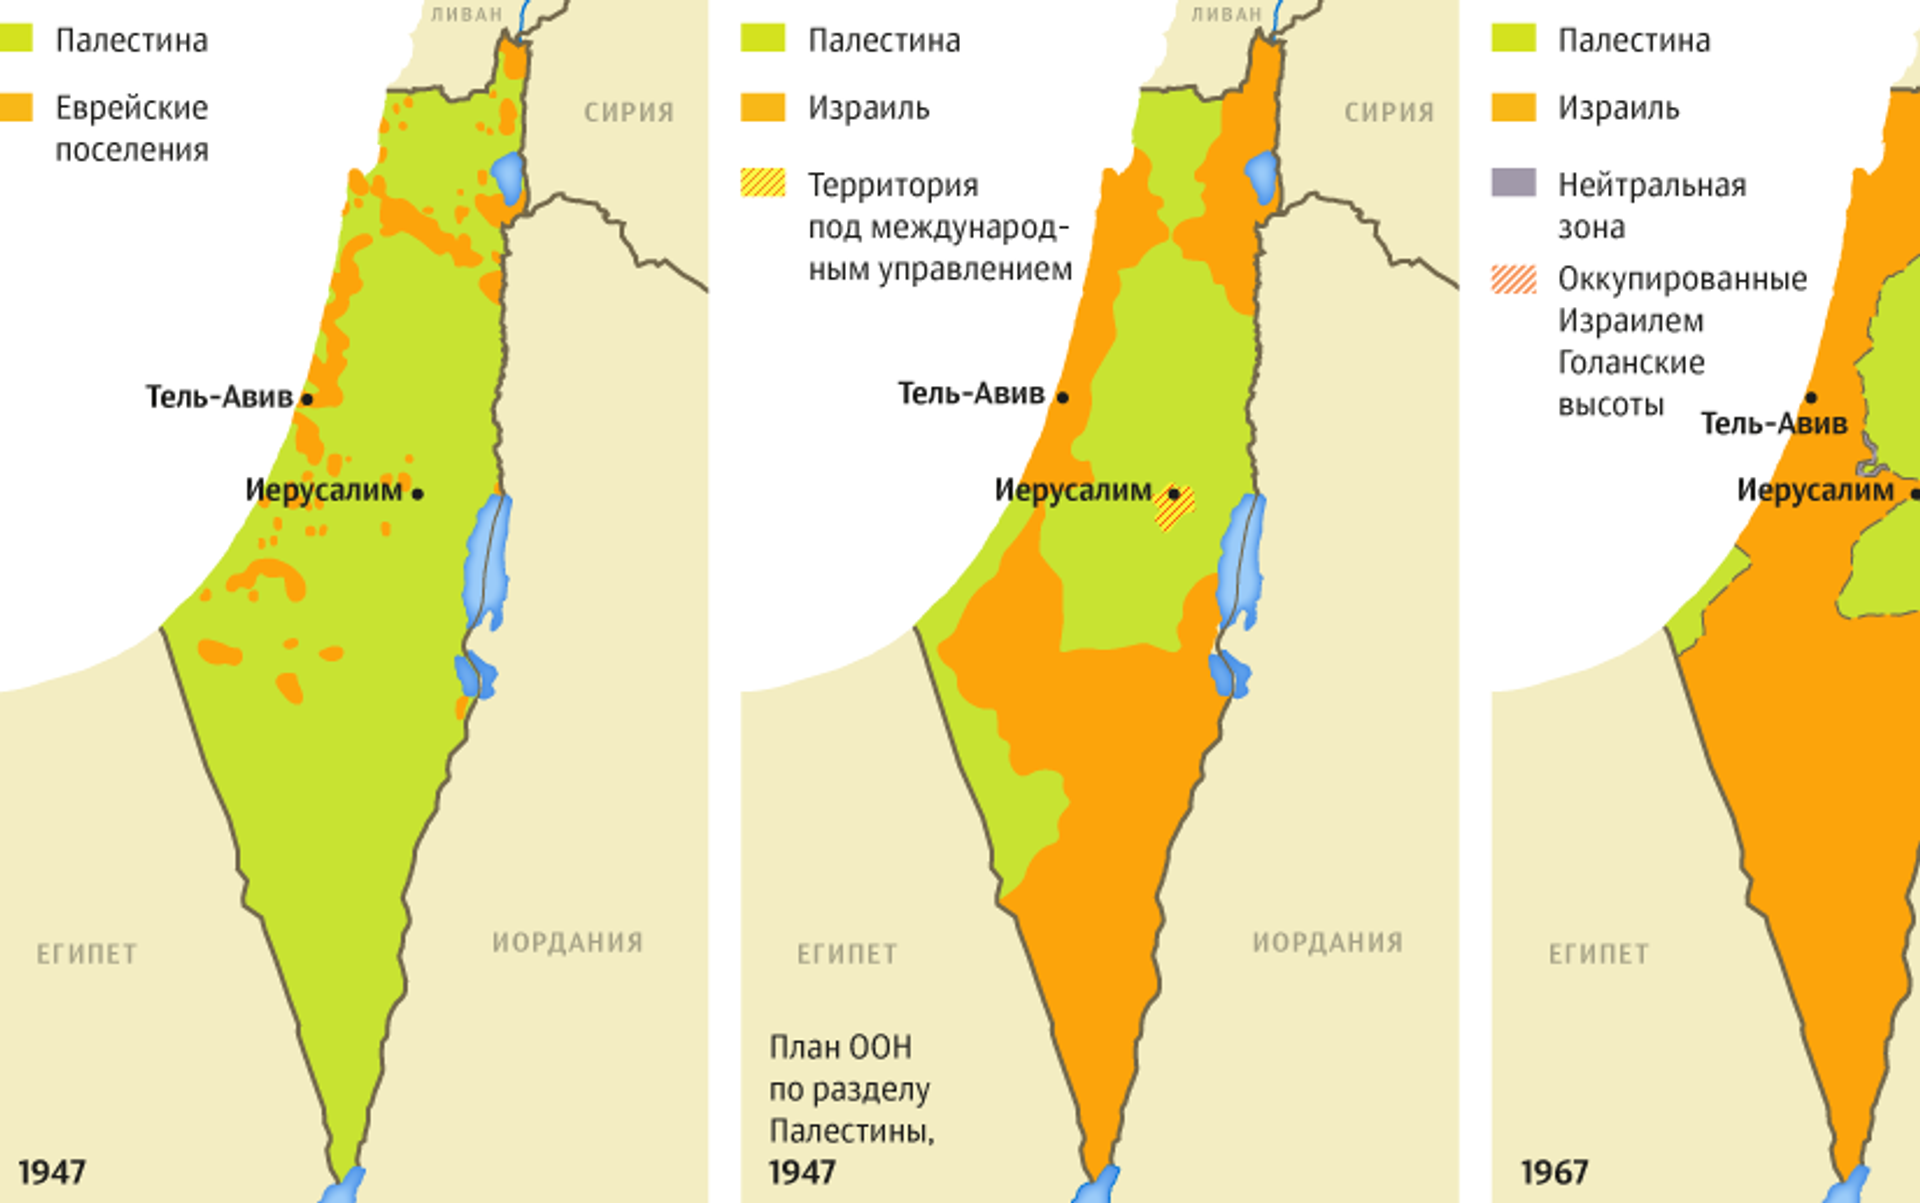 Палестина история карты